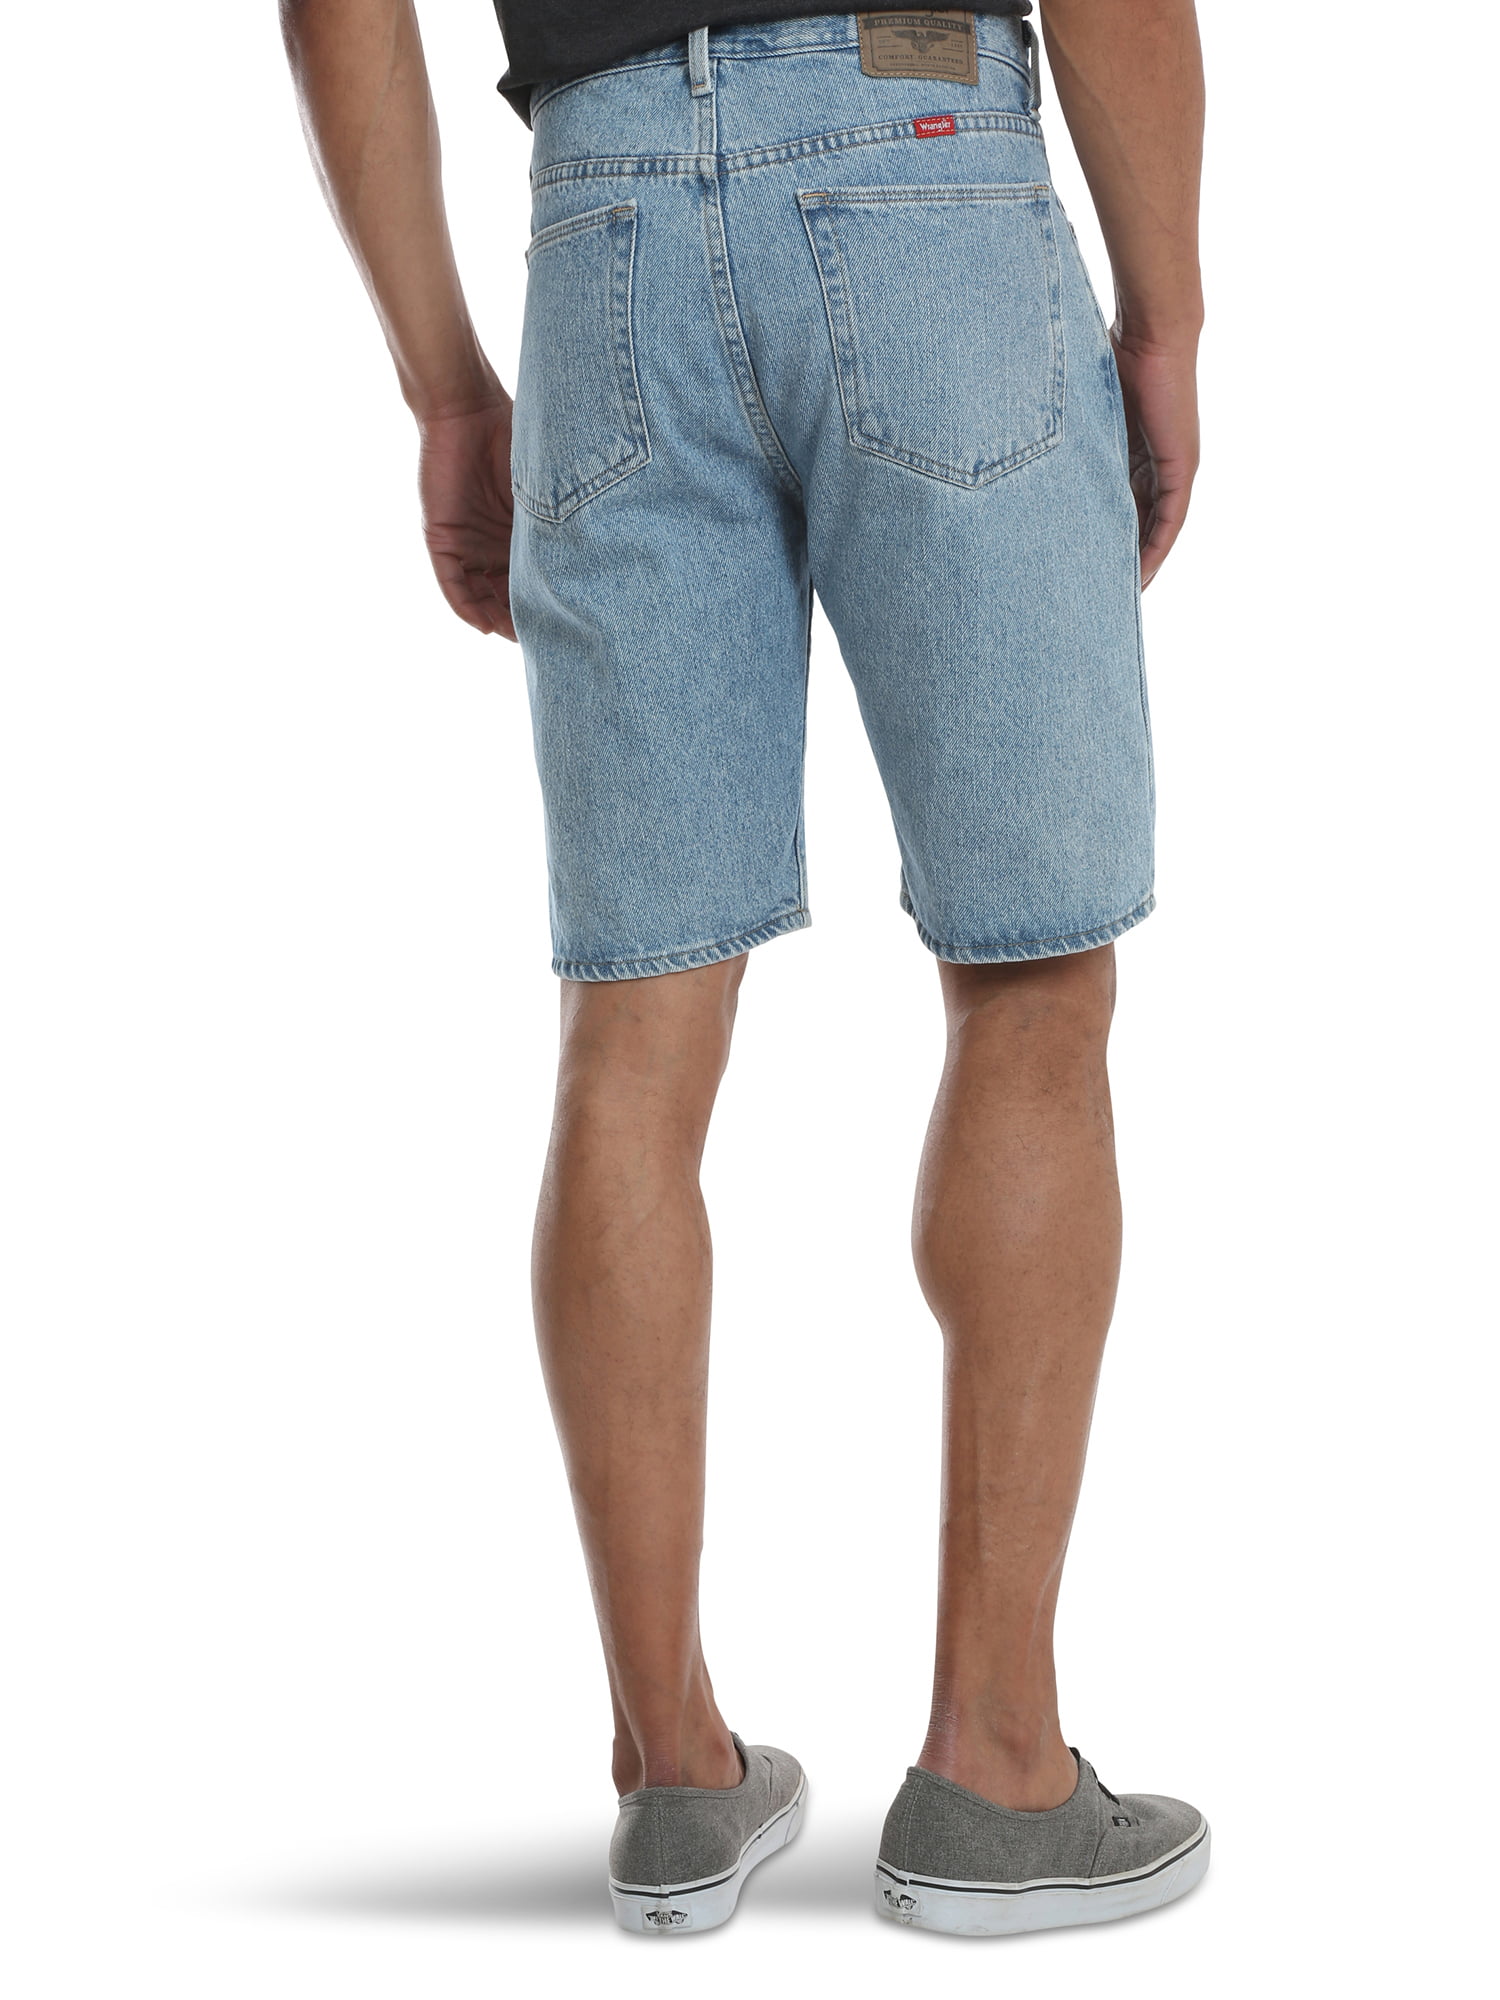 Wrangler Men's 5 Pocket Denim Short, Relaxed Fit 